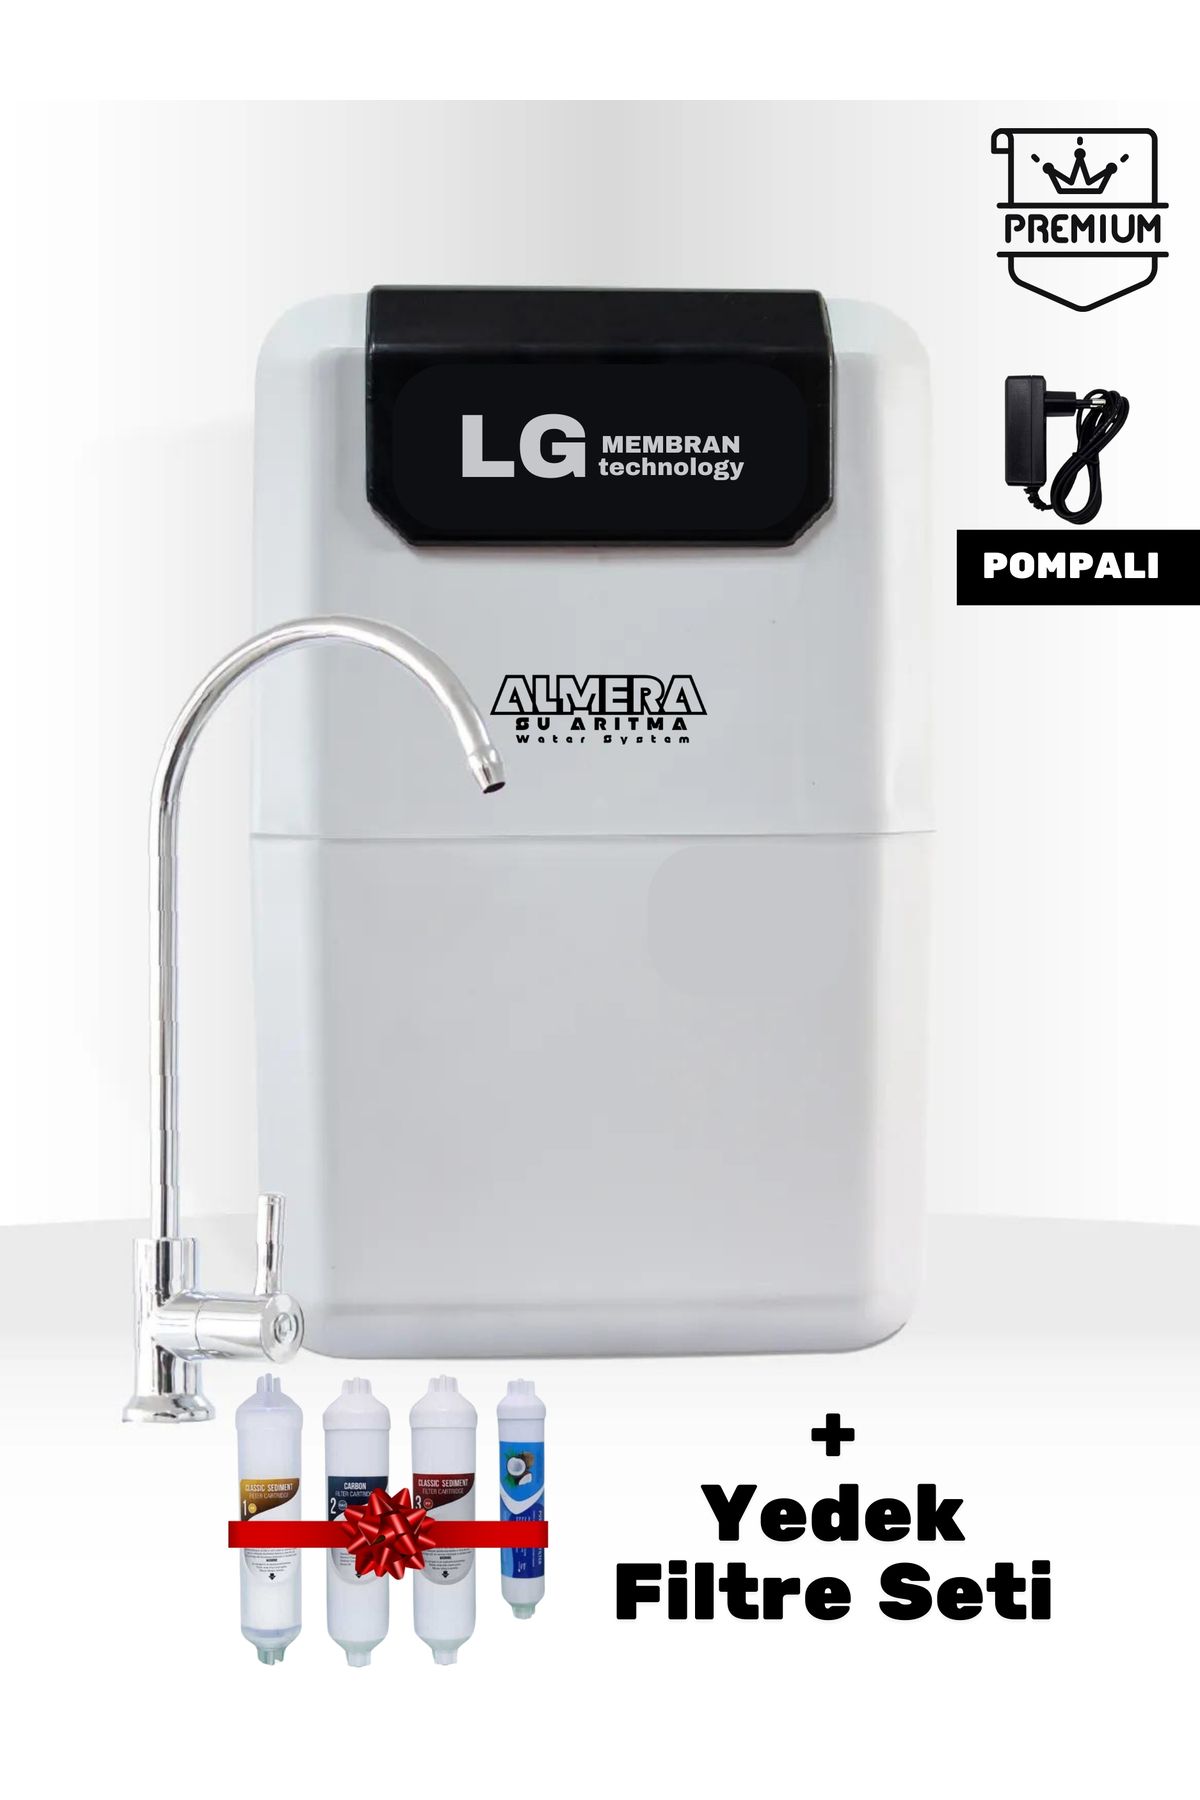 LG Chem Premium Pompalı Su Arıtma Cihazı Ekstra Mineralli Çelik Tanklı & Yedek Filtre Seti İle Birlikte